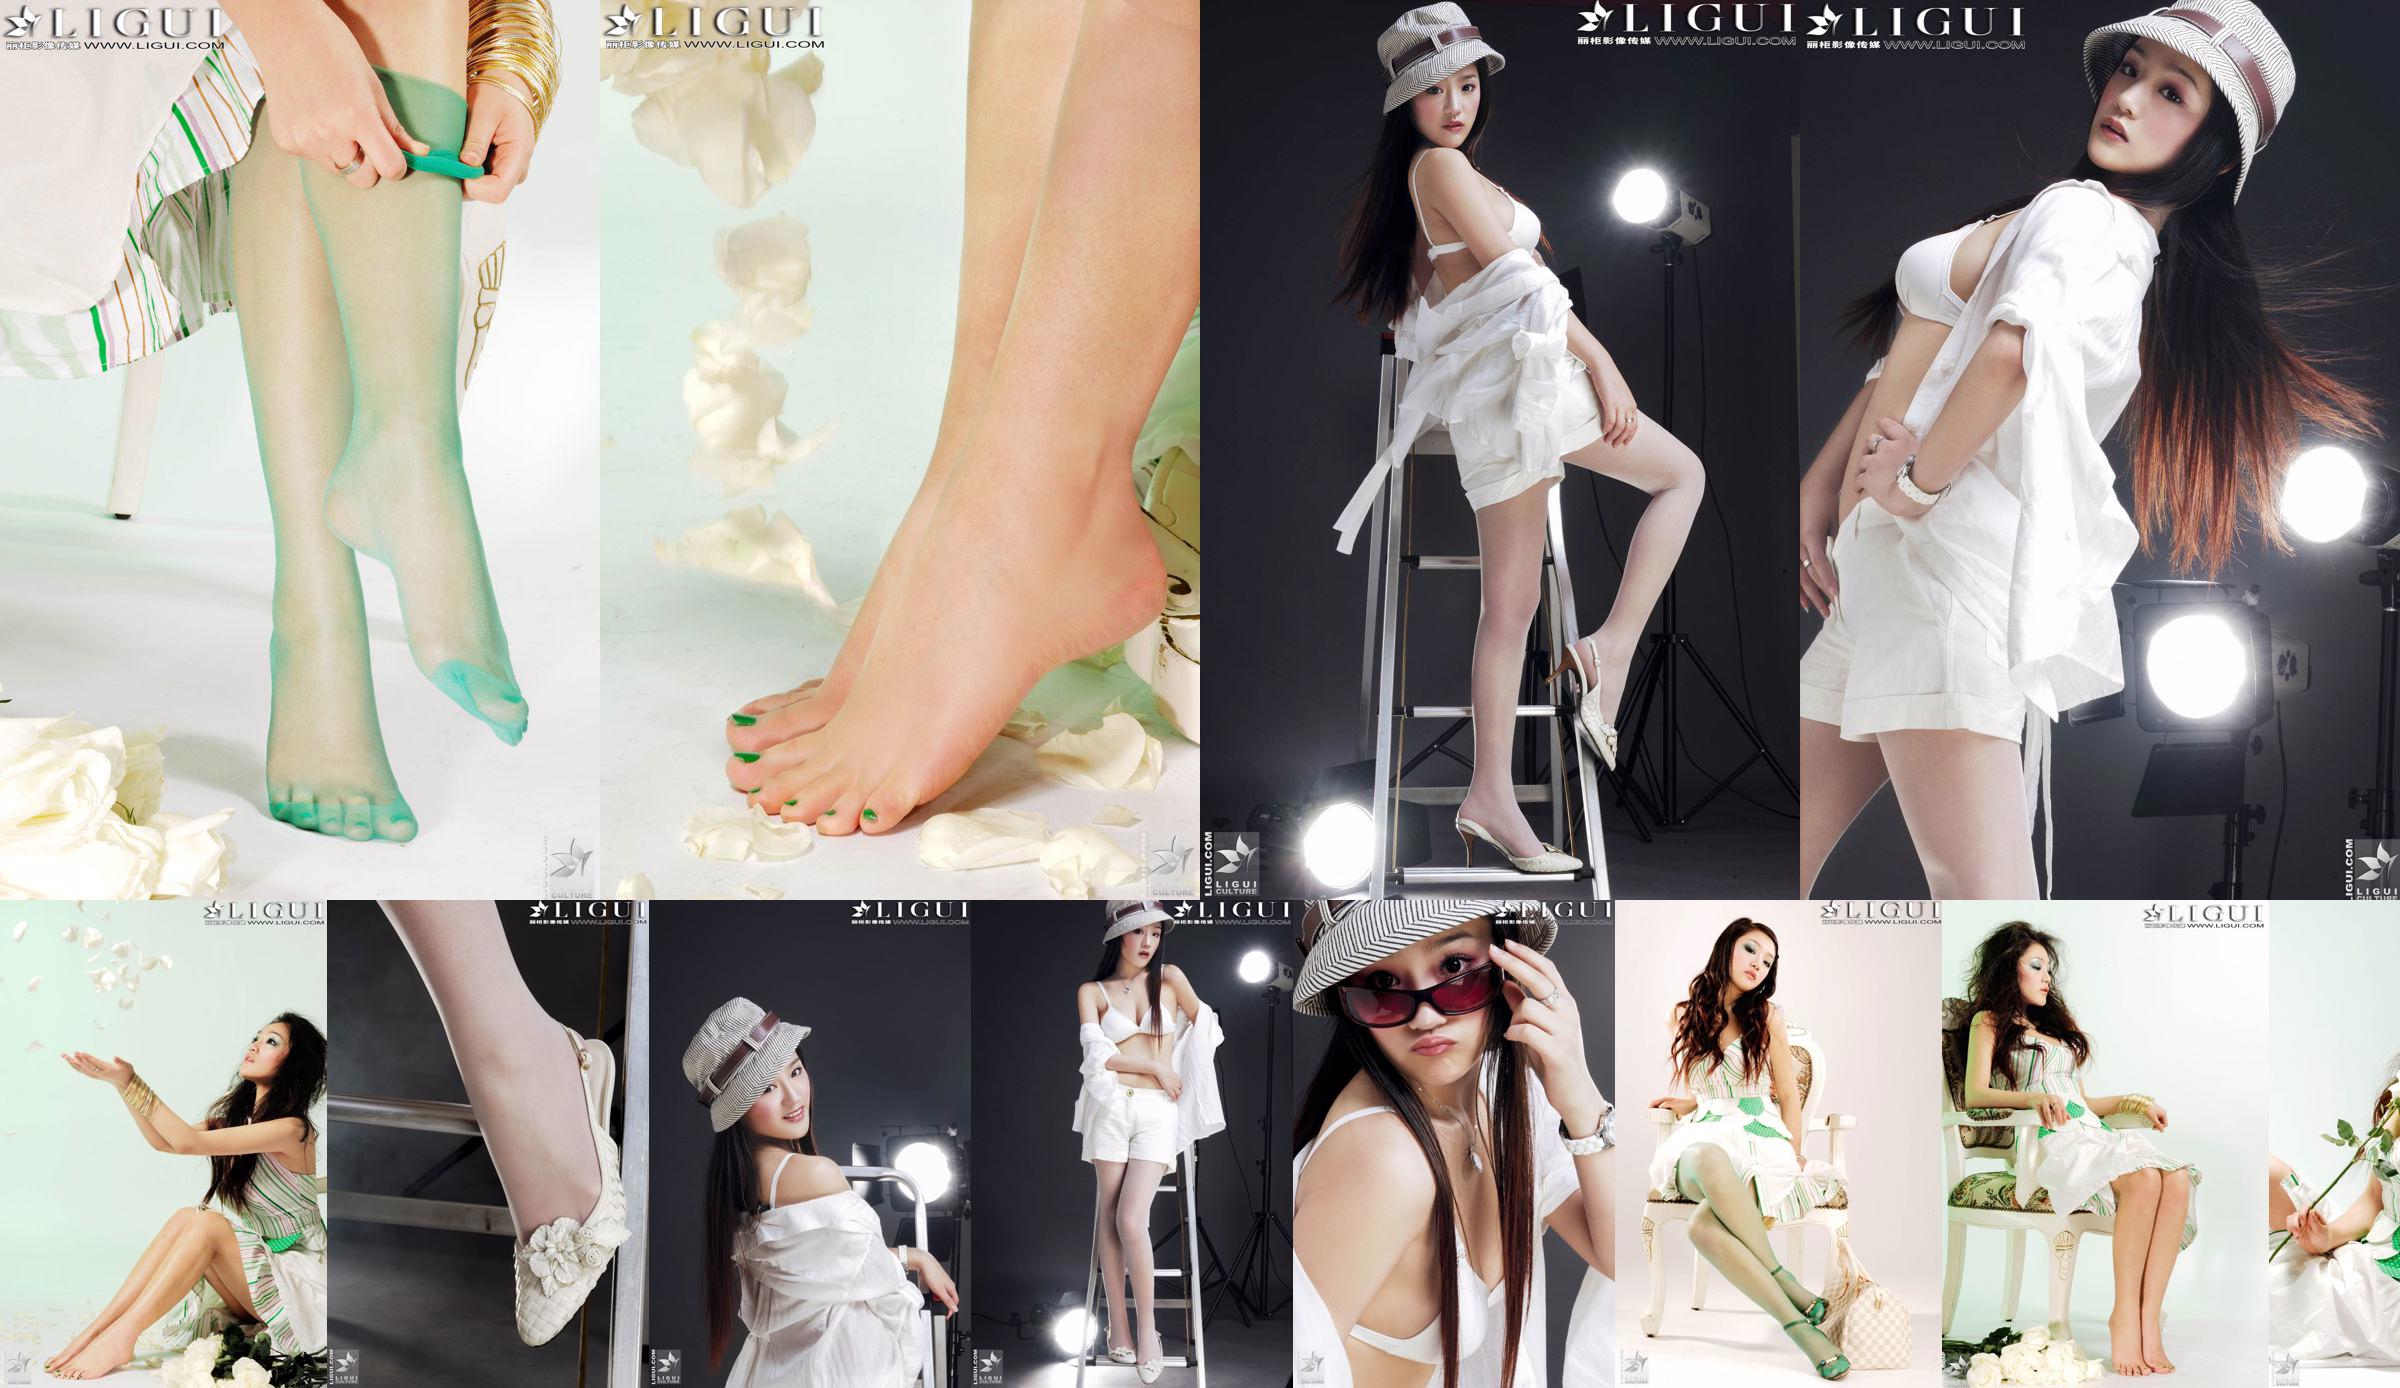 [丽 柜 贵 piede LiGui] Foto "Fashionable Foot" del modello Zhang Jingyan di belle gambe e piedi di seta No.bade60 Pagina 1